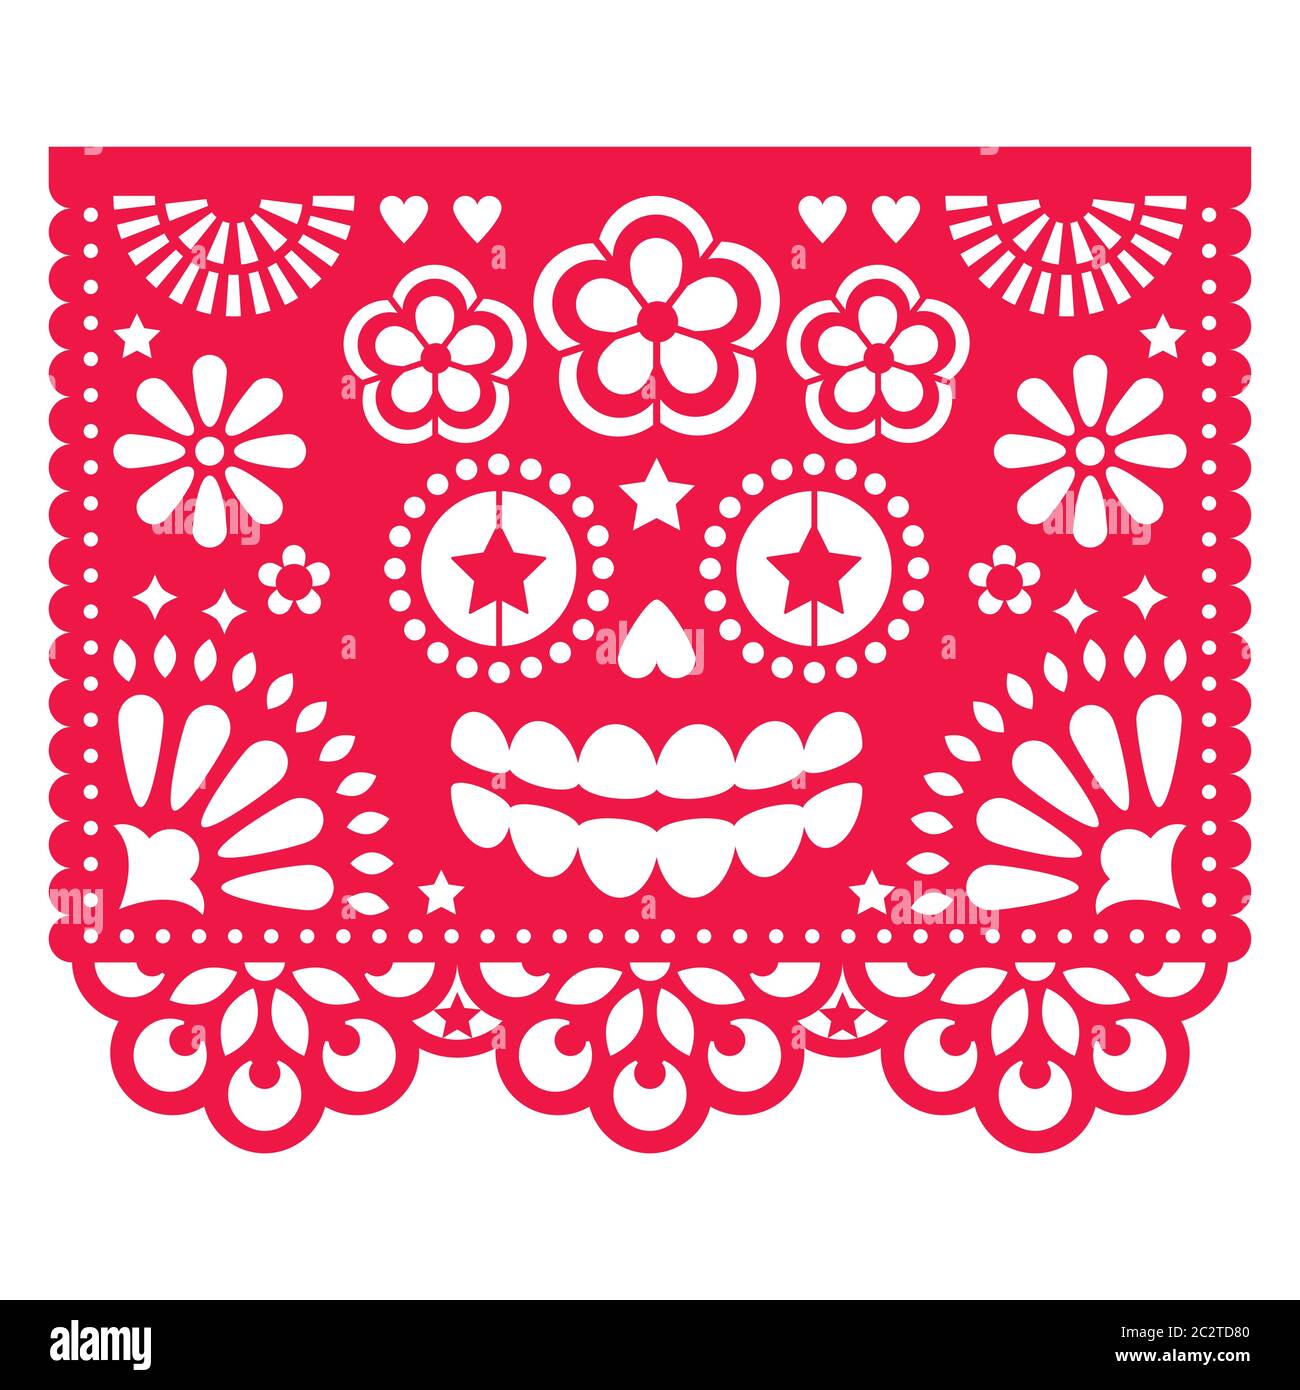 Halloween papier Picado avec crâne la Catrina, motif découpé en papier mexicain - Dia de Los Muertos, célébration du jour des morts Illustration de Vecteur